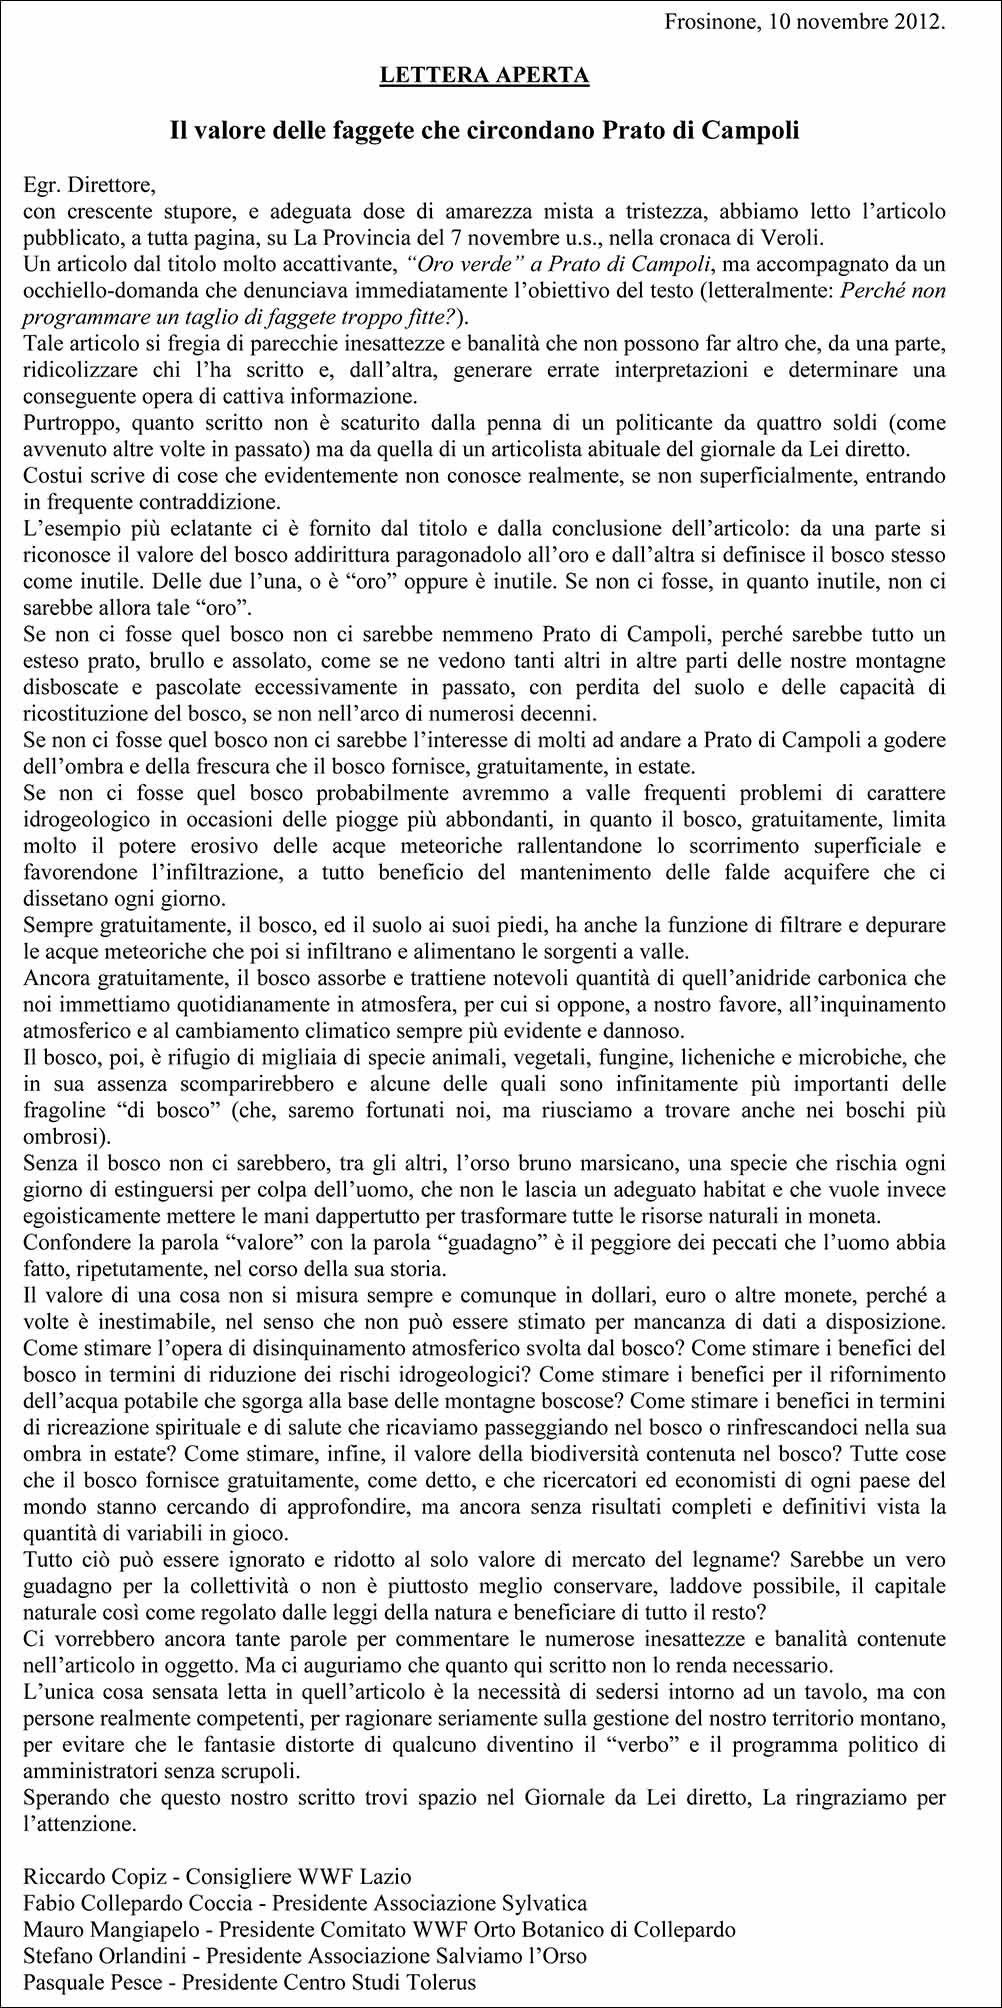 Lettera Aperta_10-11-2012_faggeta Prato di Campoli OK.jpg